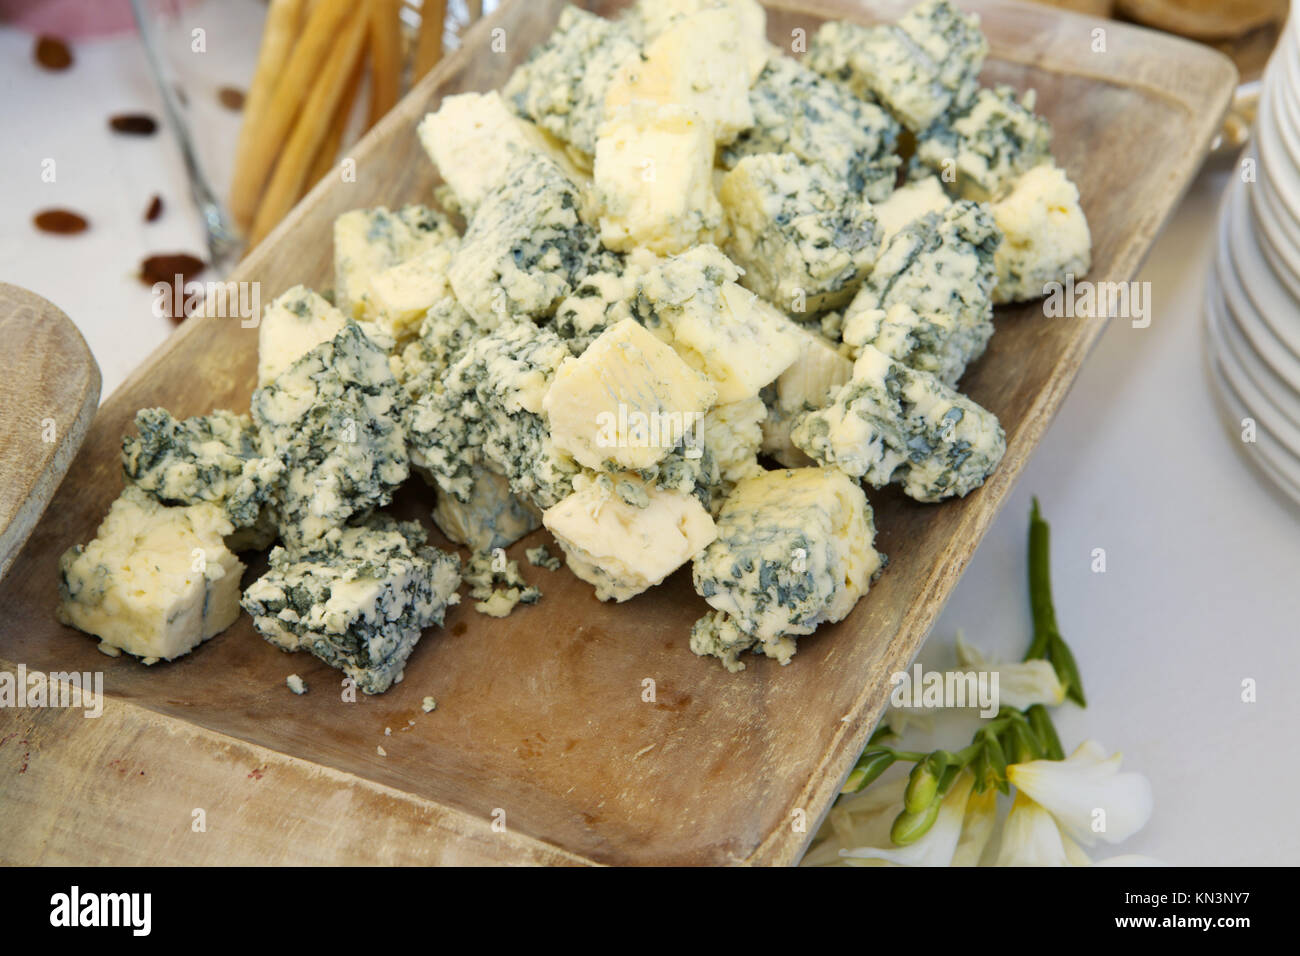 Cubos de delicioso queso azul en una bandeja de madera, España. Foto de stock